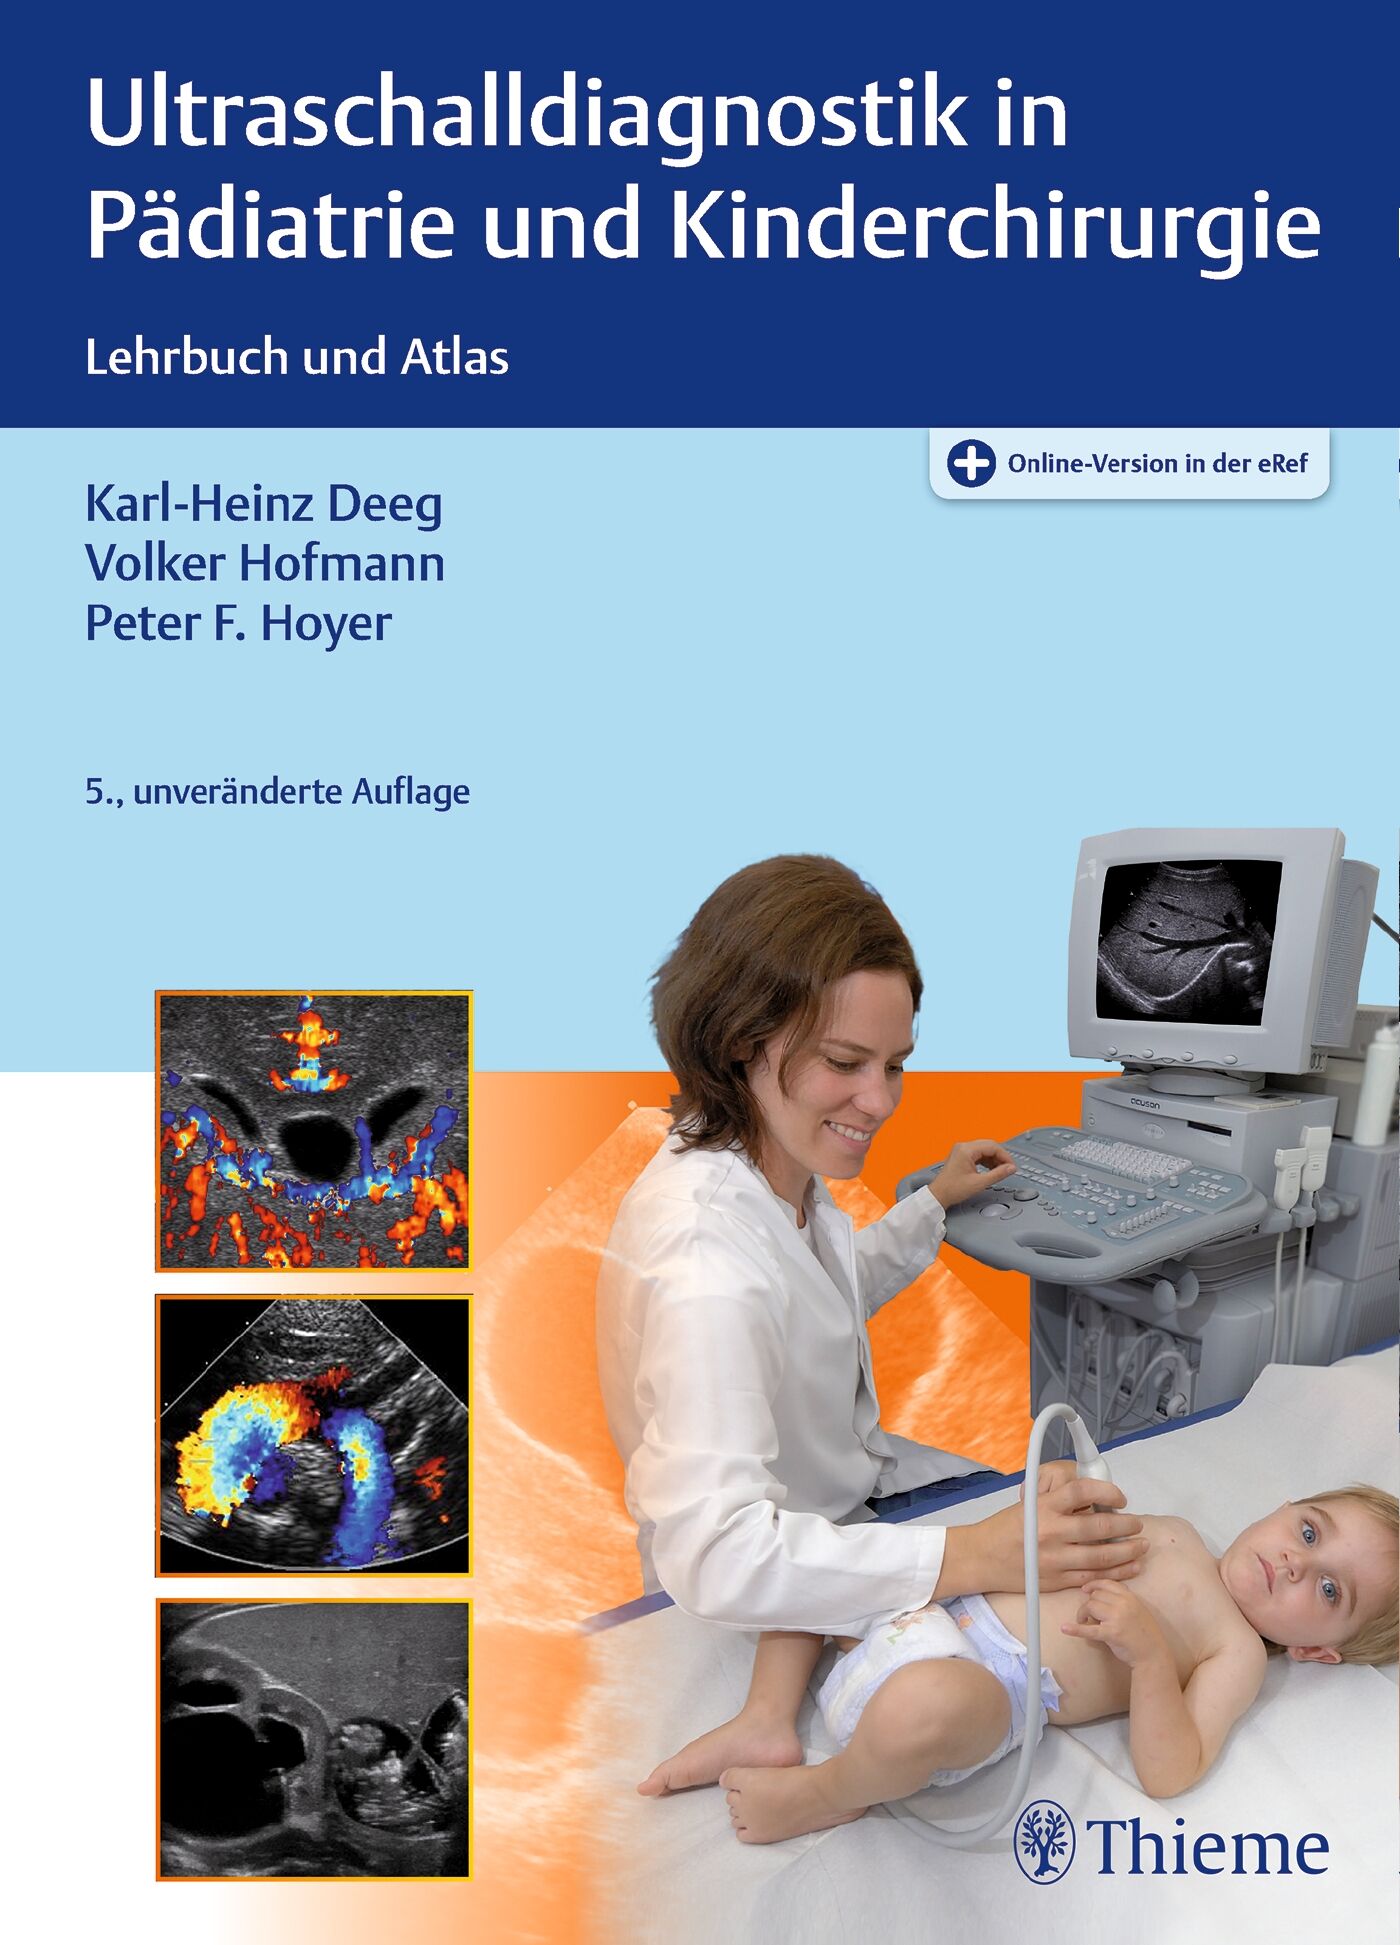 Ultraschalldiagnostik in Pädiatrie und Kinderchirurgie, 9783132424661